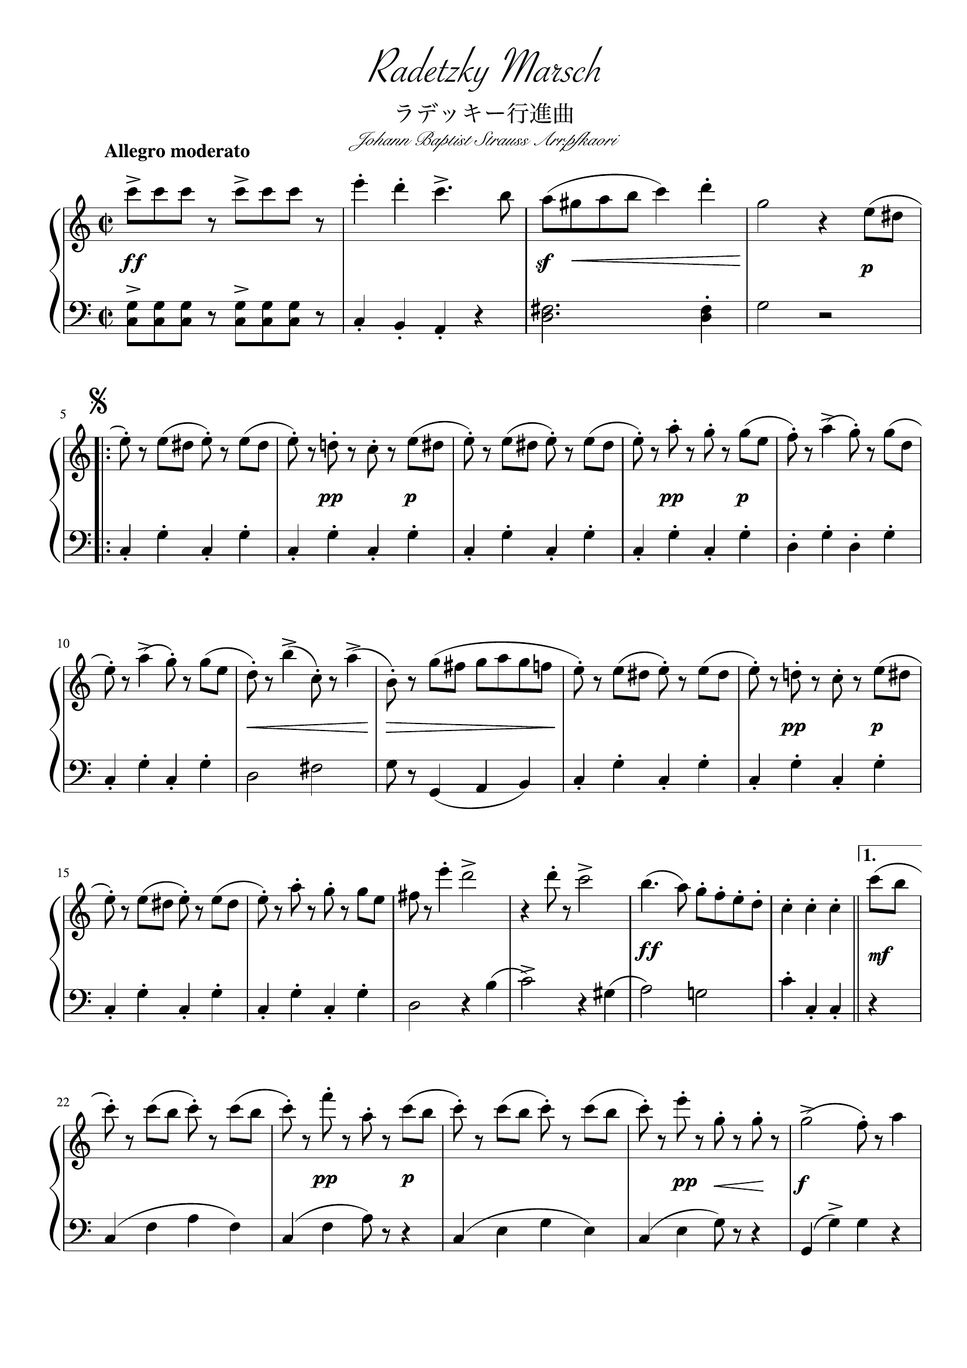 ヨハンシュトラウス - ラデッキー行進曲 (full ピアノソロ初級) by pfkaori